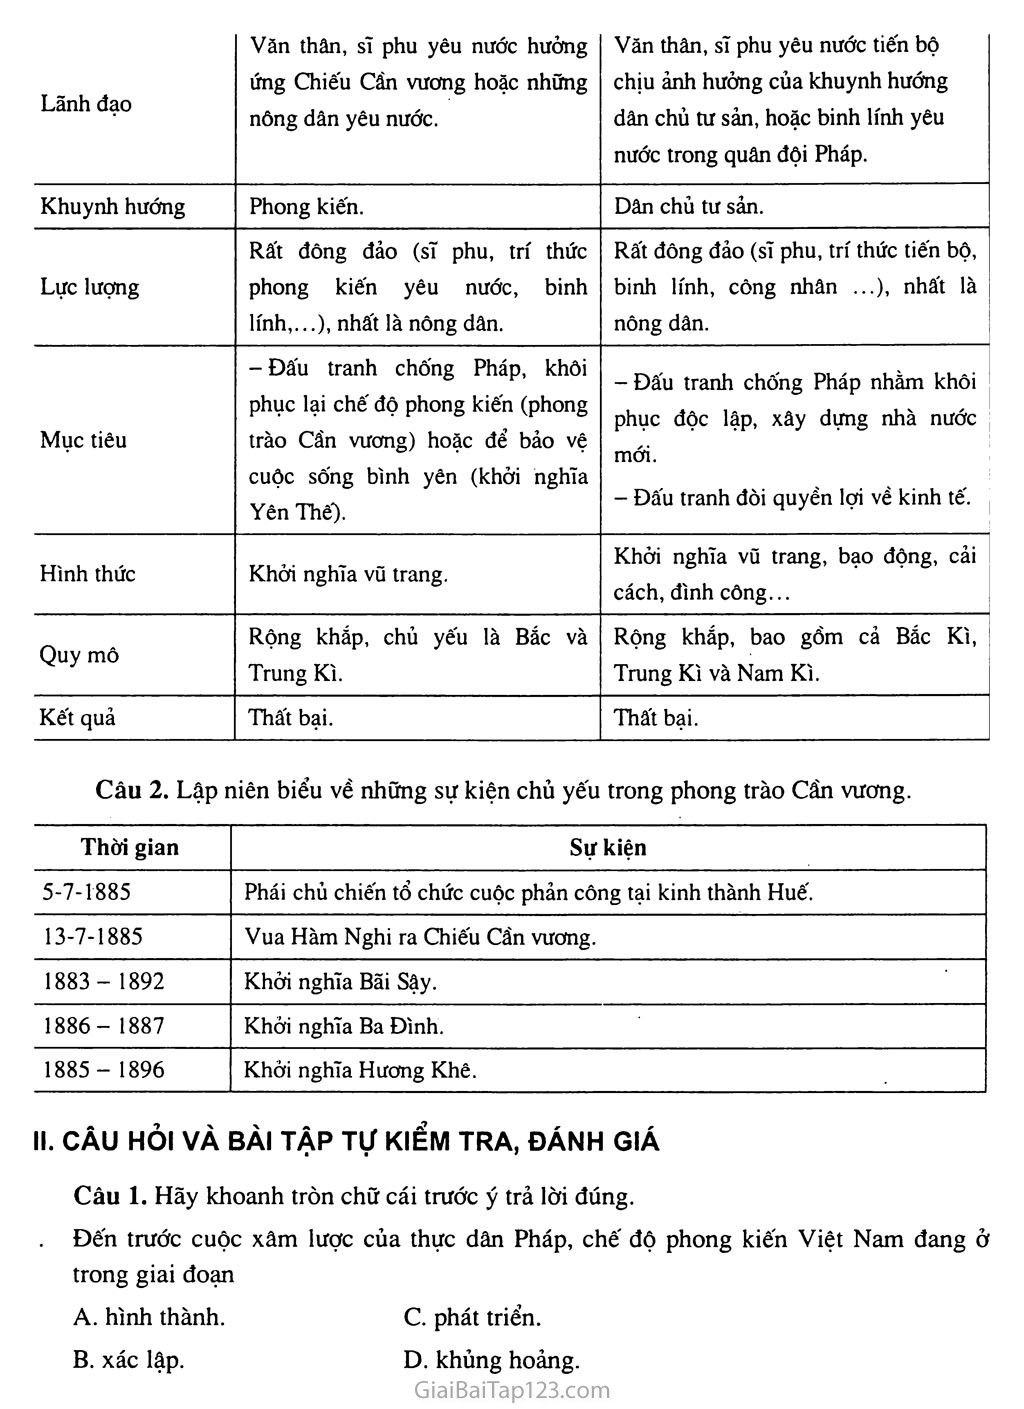 Sơ kết lịch sử Việt Nam (1858 - 1918) trang 4